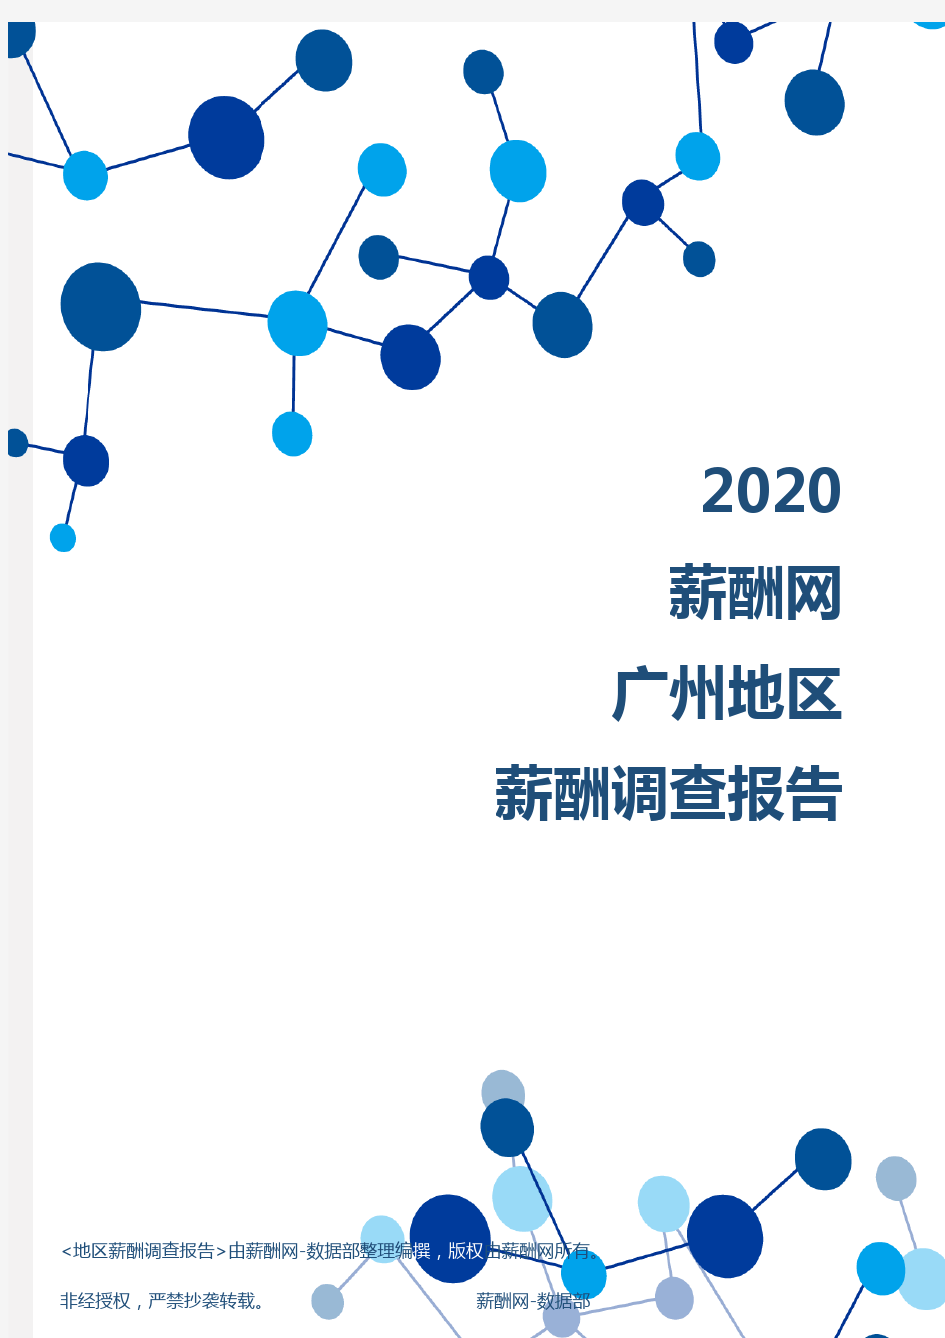 薪酬报告系列-2020年广州地区薪酬调查报告